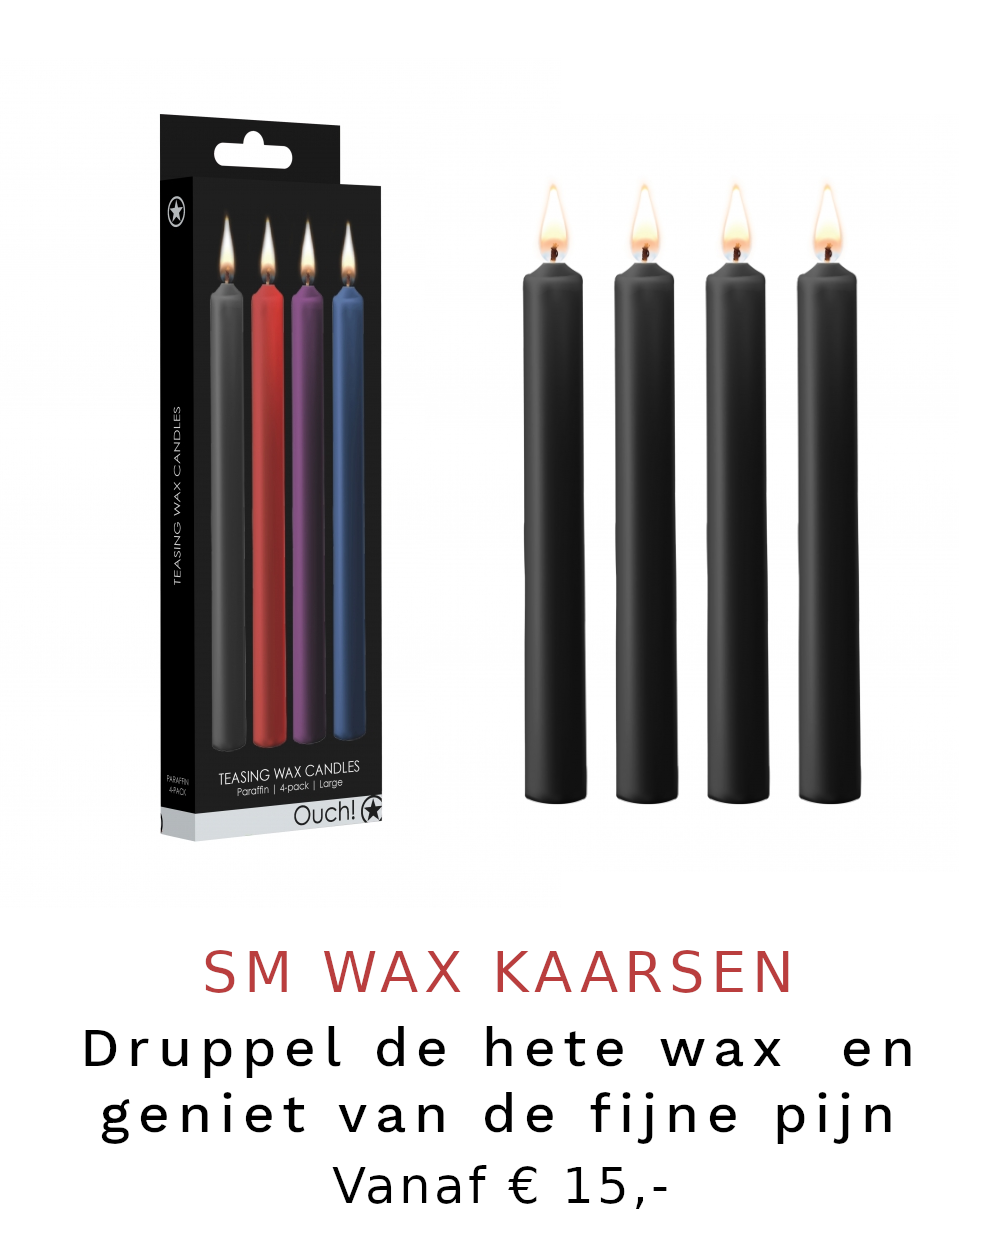 SM Wax kaarsen